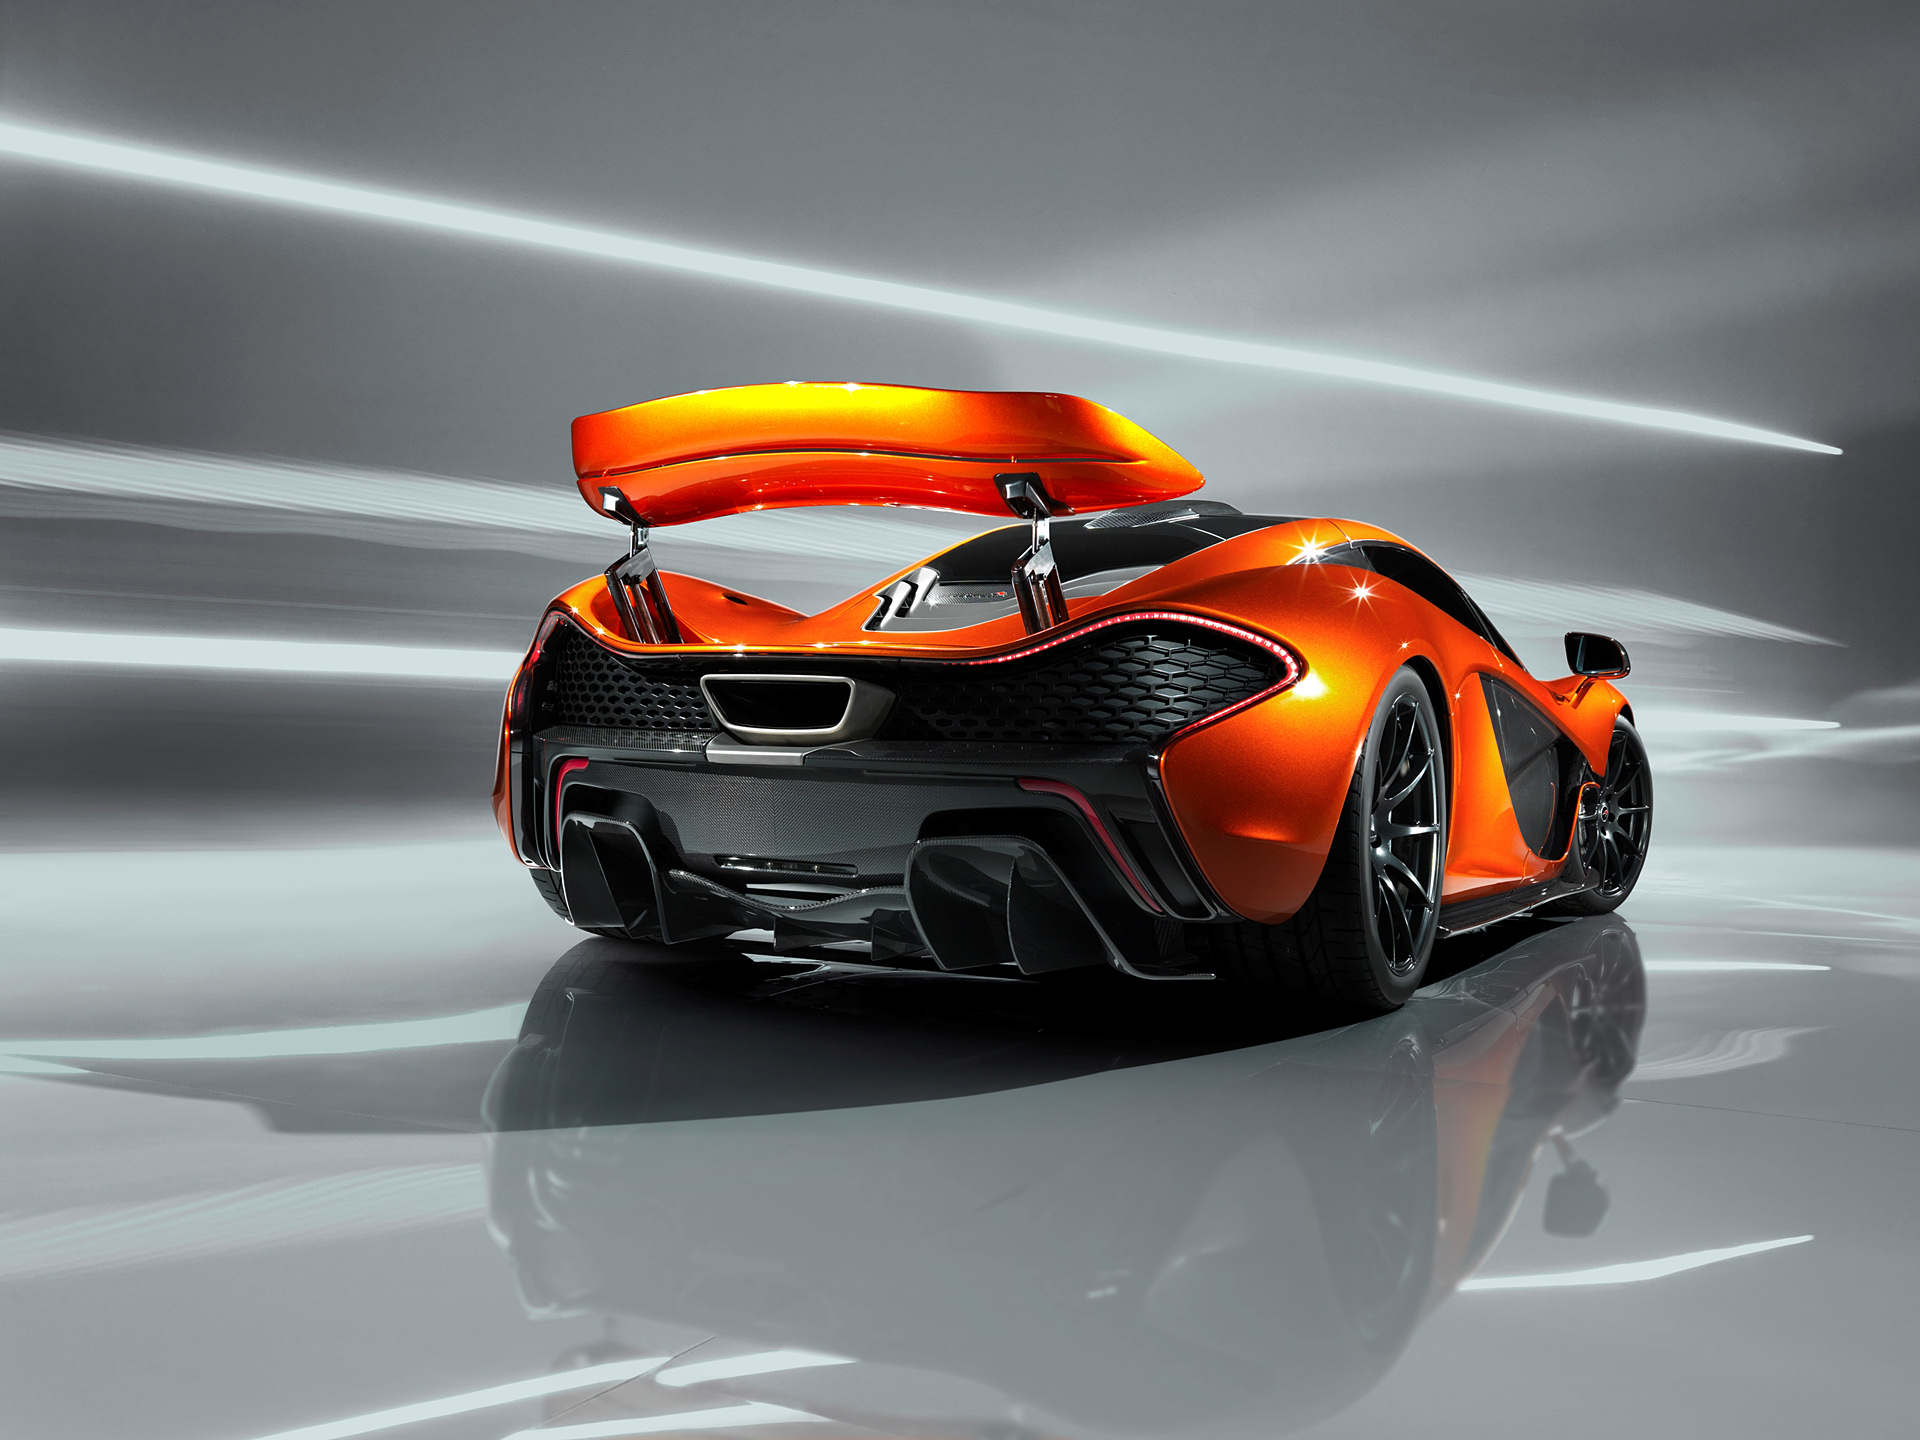  2012 McLaren P1 Concept Wallpaper.